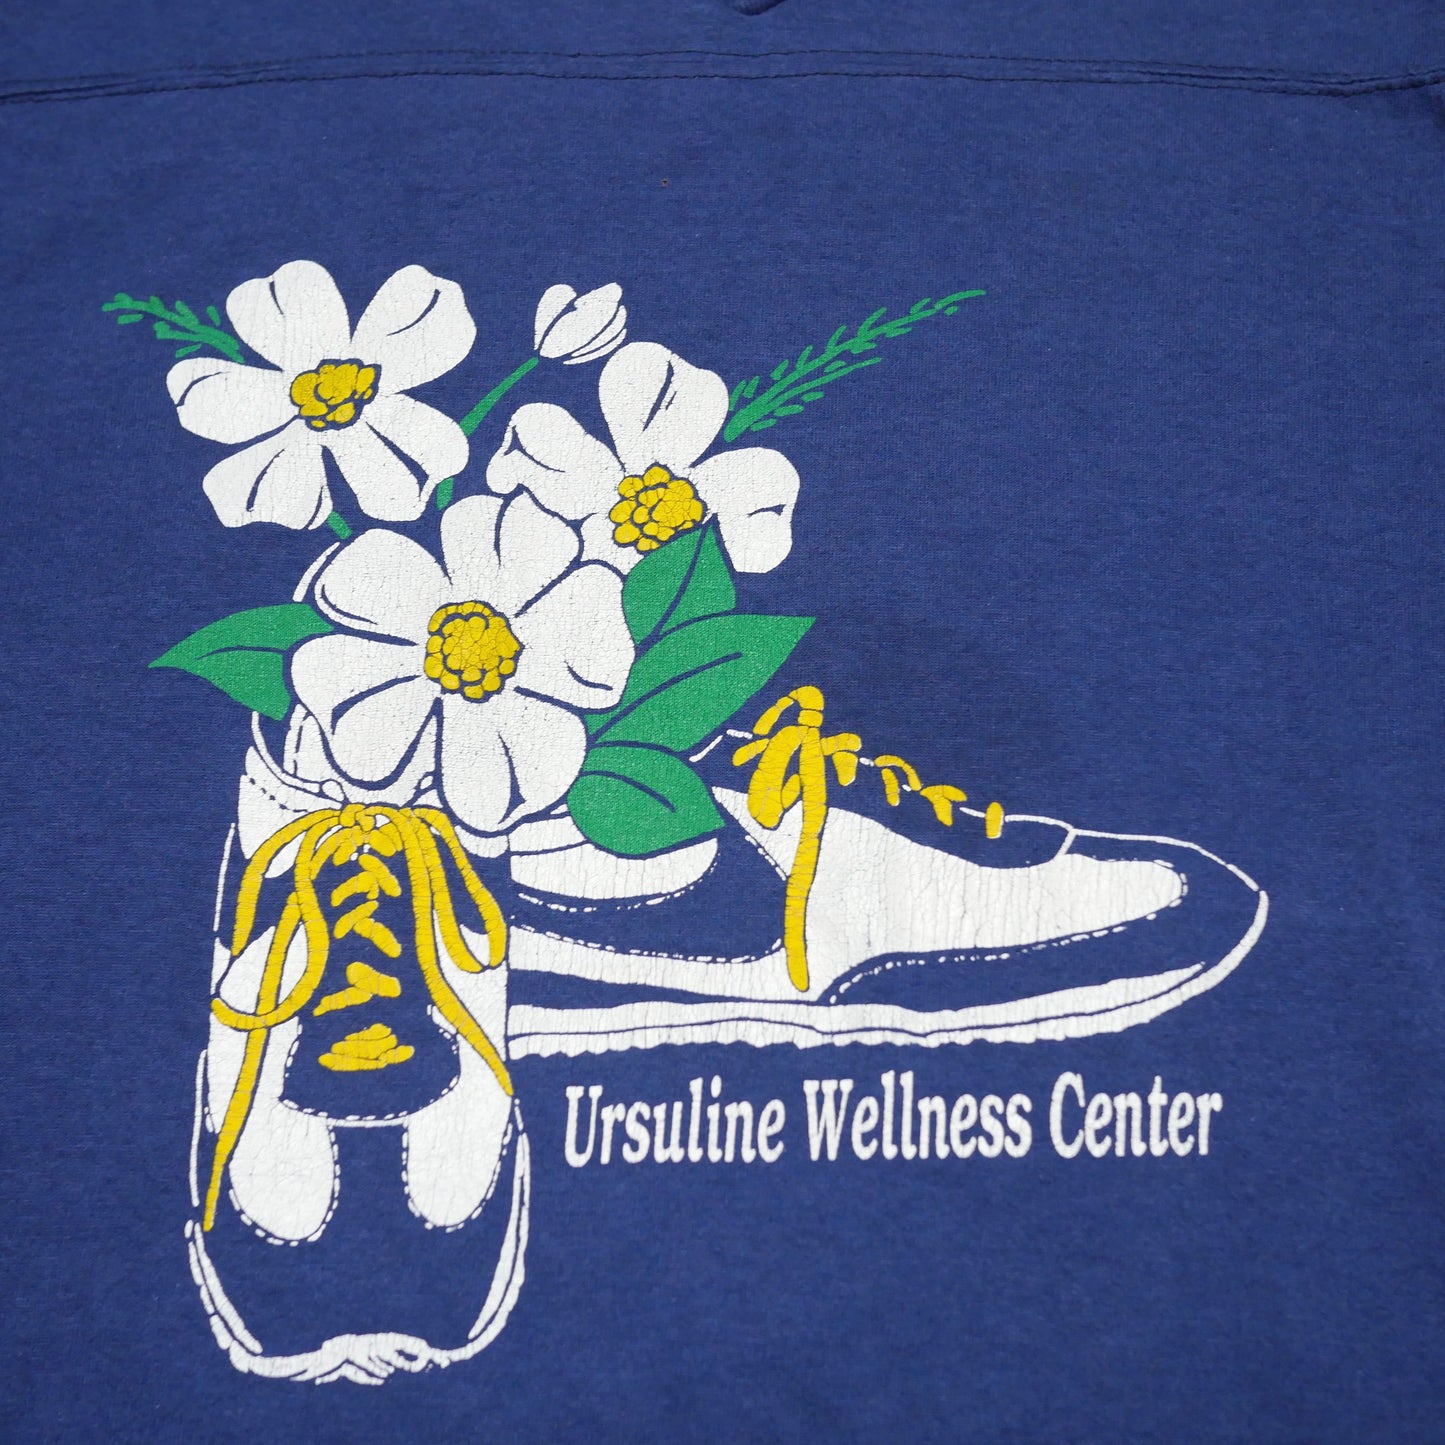 Ursuline Wellness Center 3/4 sleeve Nike Cortez Shirt - XL